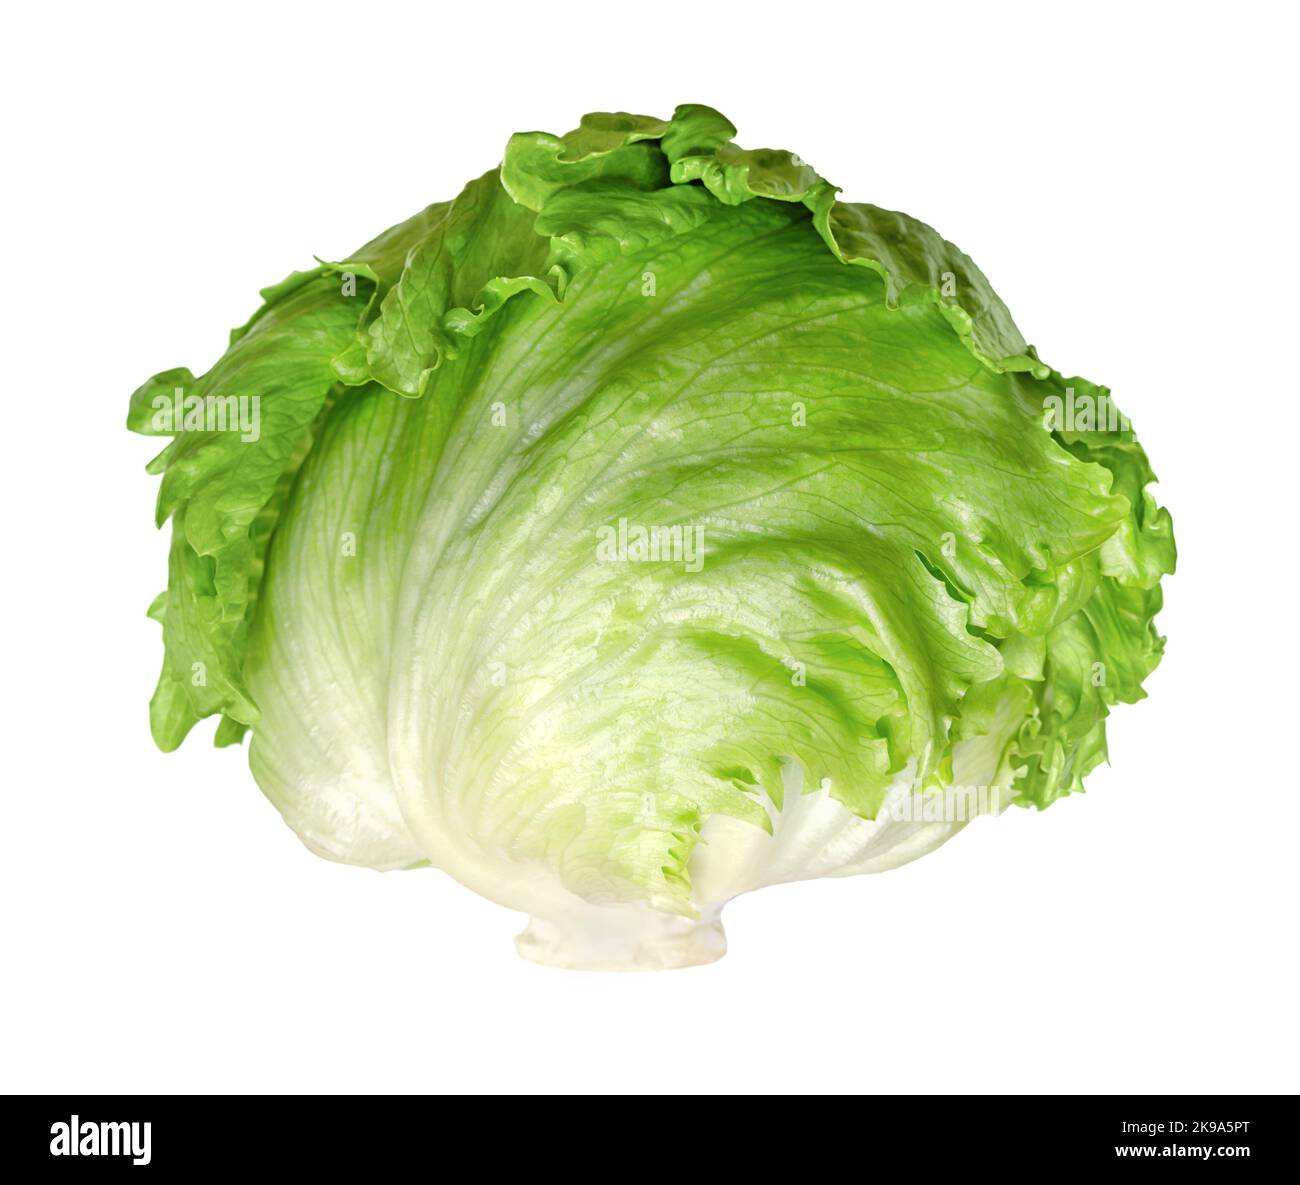 Eisbergsalat oder Knusperkopf, isoliert, Vorderansicht, auf weißem Hintergrund. Frischer, hellgrüner Salatkopf, manchmal auch Kohlsalat genannt. Stockfoto